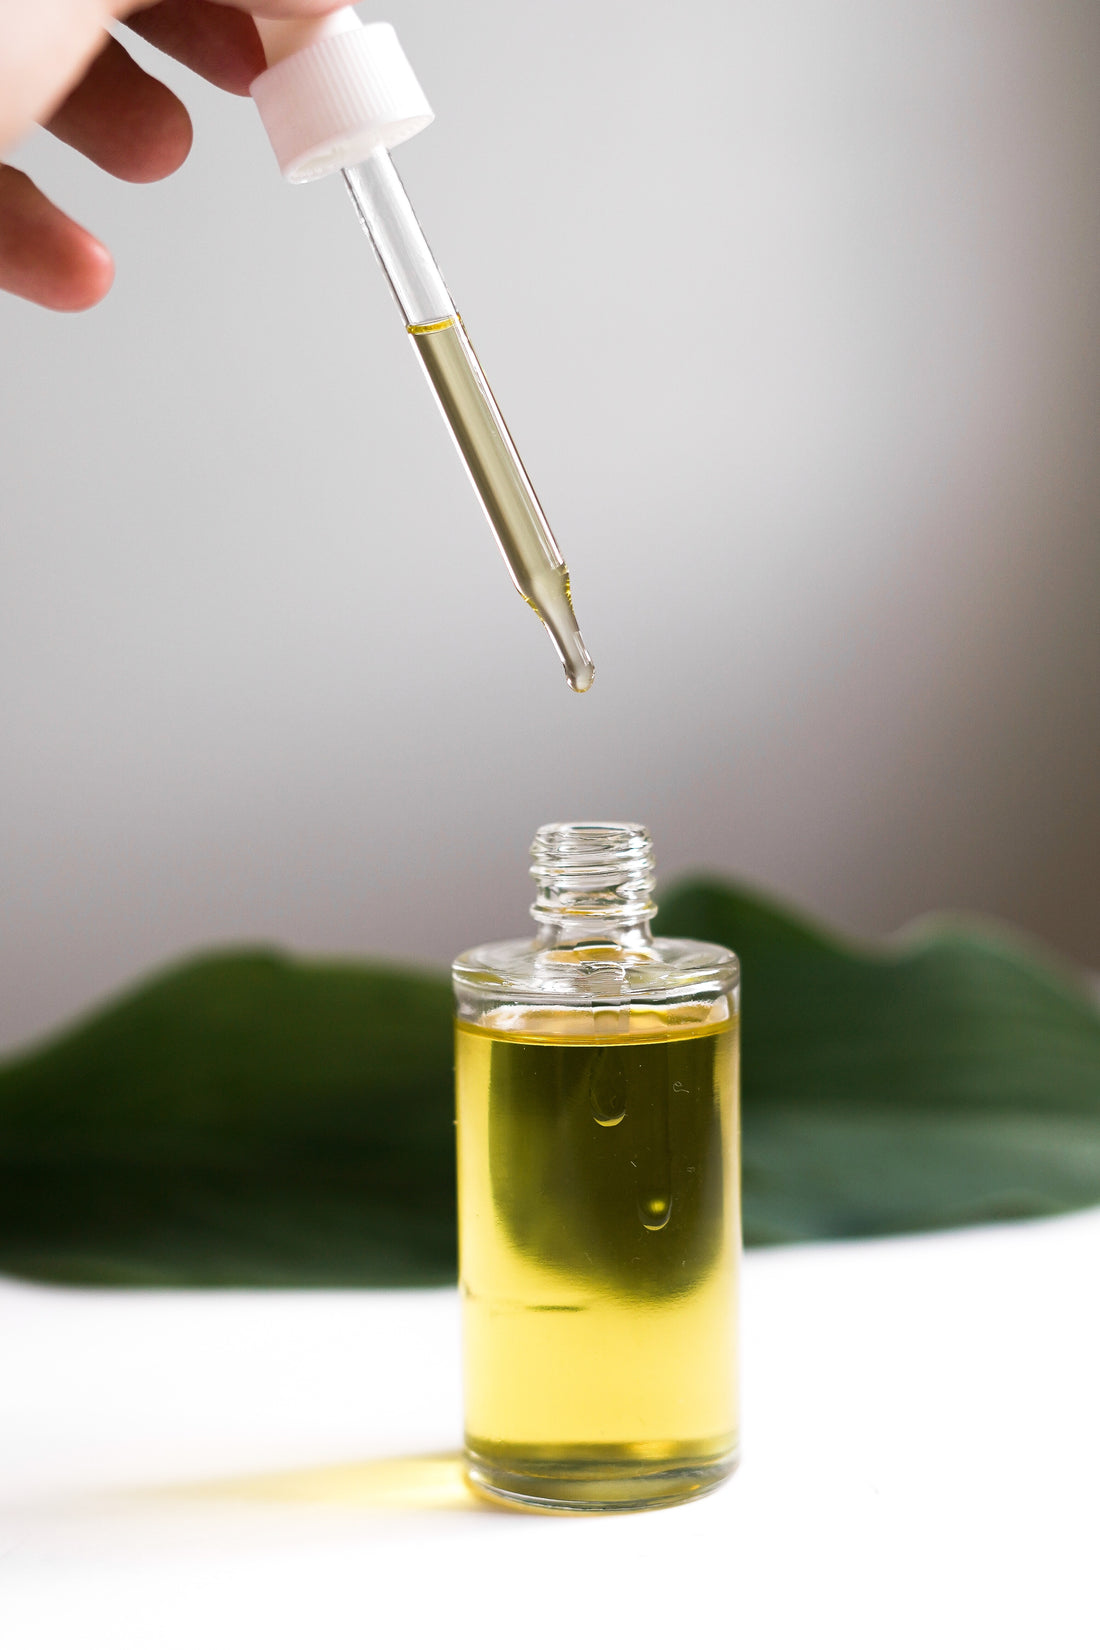 Rosemary Oil for Hair Growth?